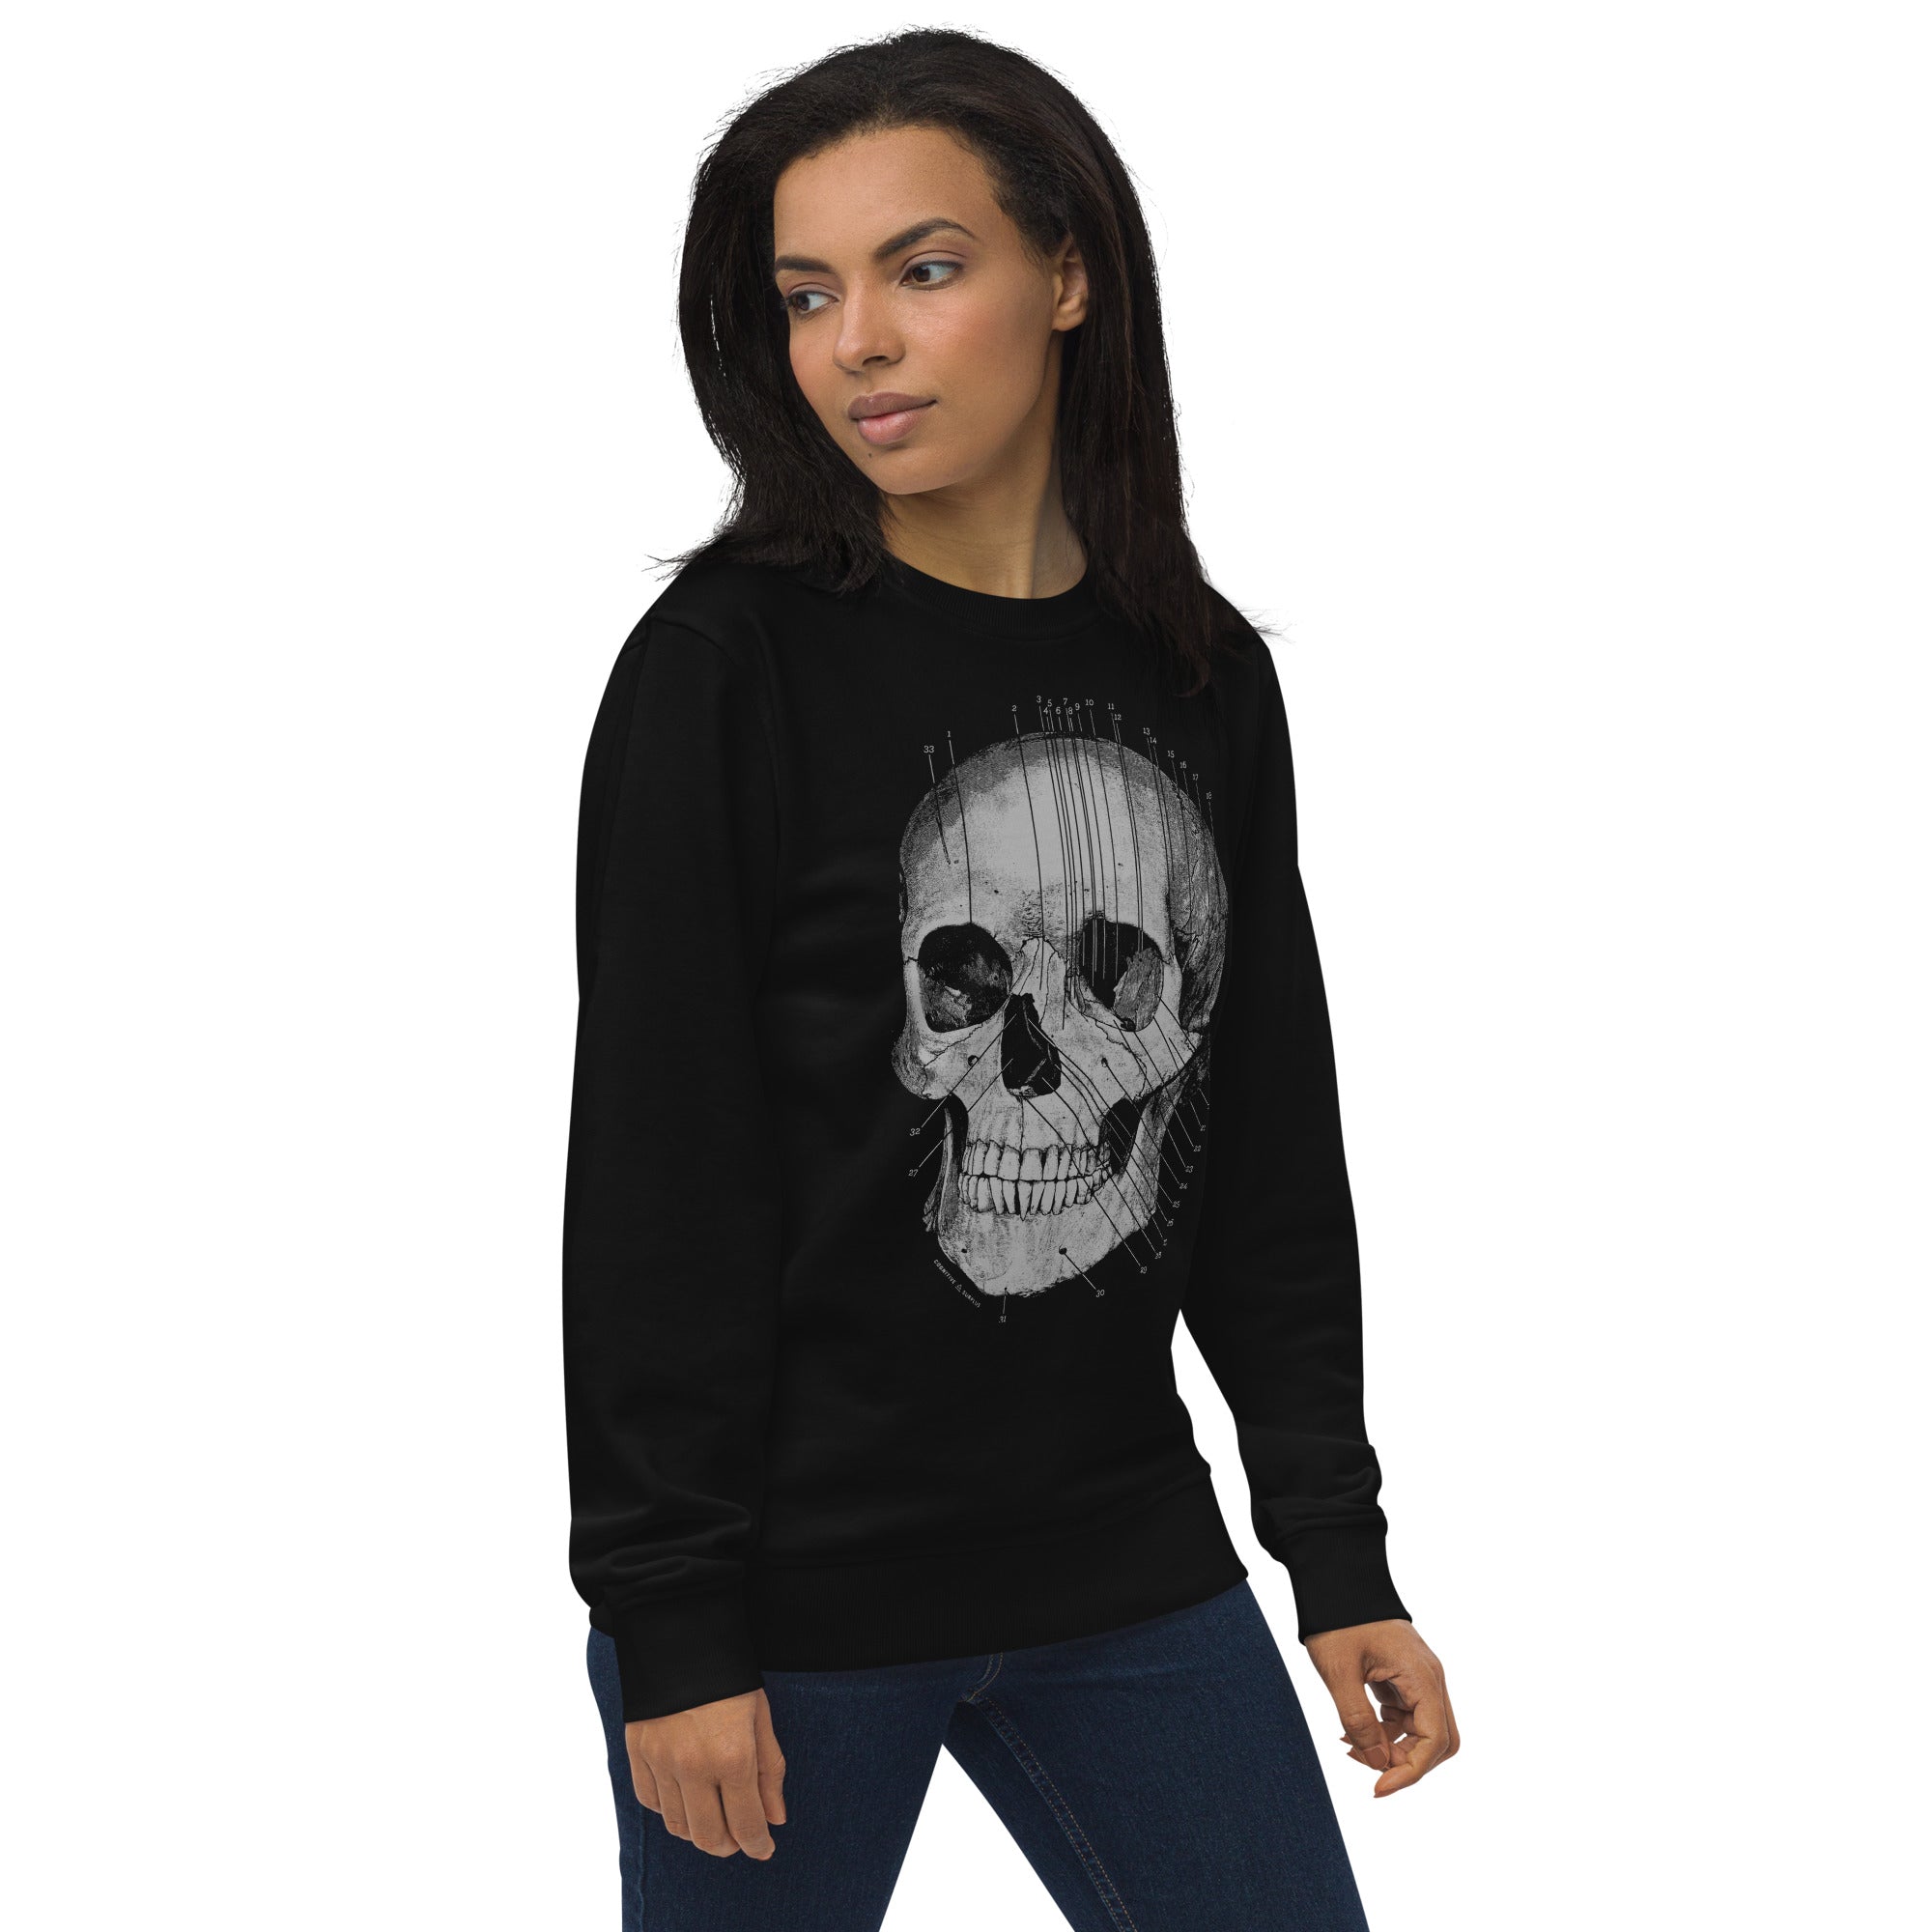 Skull Anatomy Sweatshirt - Organic